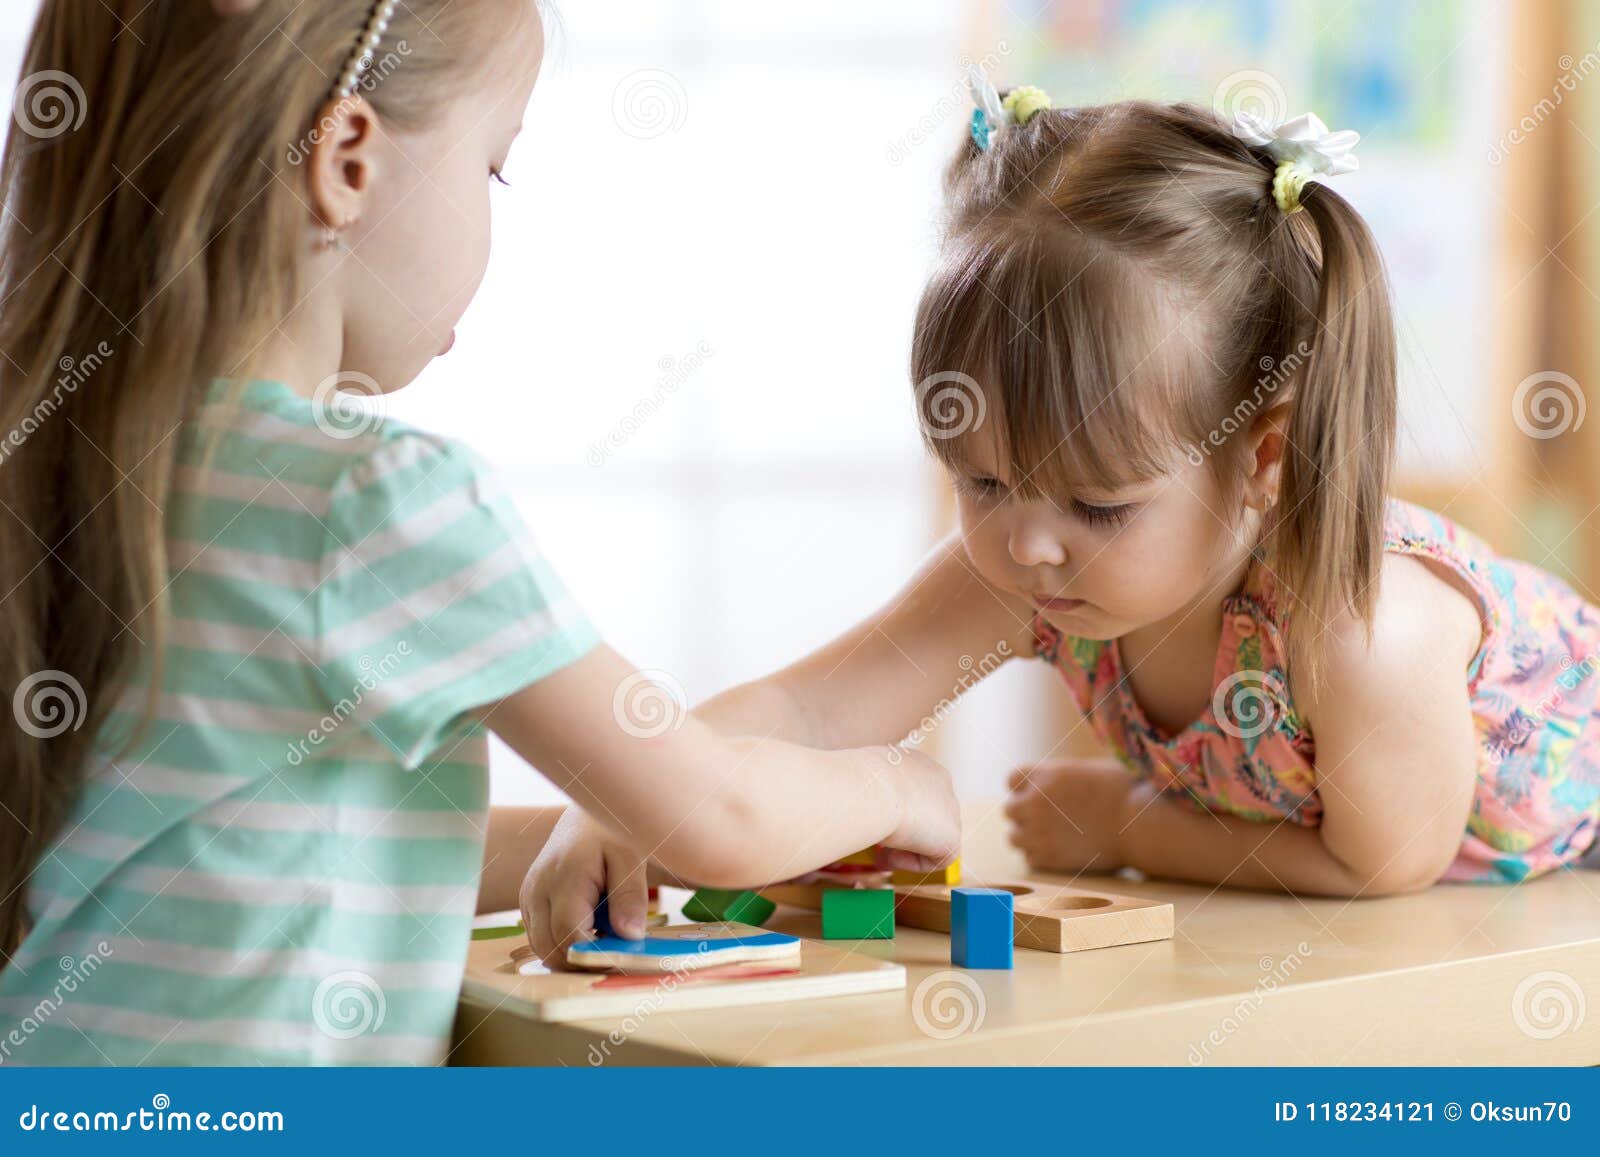 Παιδιά που παίζουν με τα ζωηρόχρωμα παιχνίδια φραγμών Δύο κορίτσια παιδιών  στο σπίτι ή κέντρο φύλαξης Εκπαιδευτικά παιχνίδια παιδ Στοκ Εικόνα - εικόνα  από childhood, babylonia: 118234121